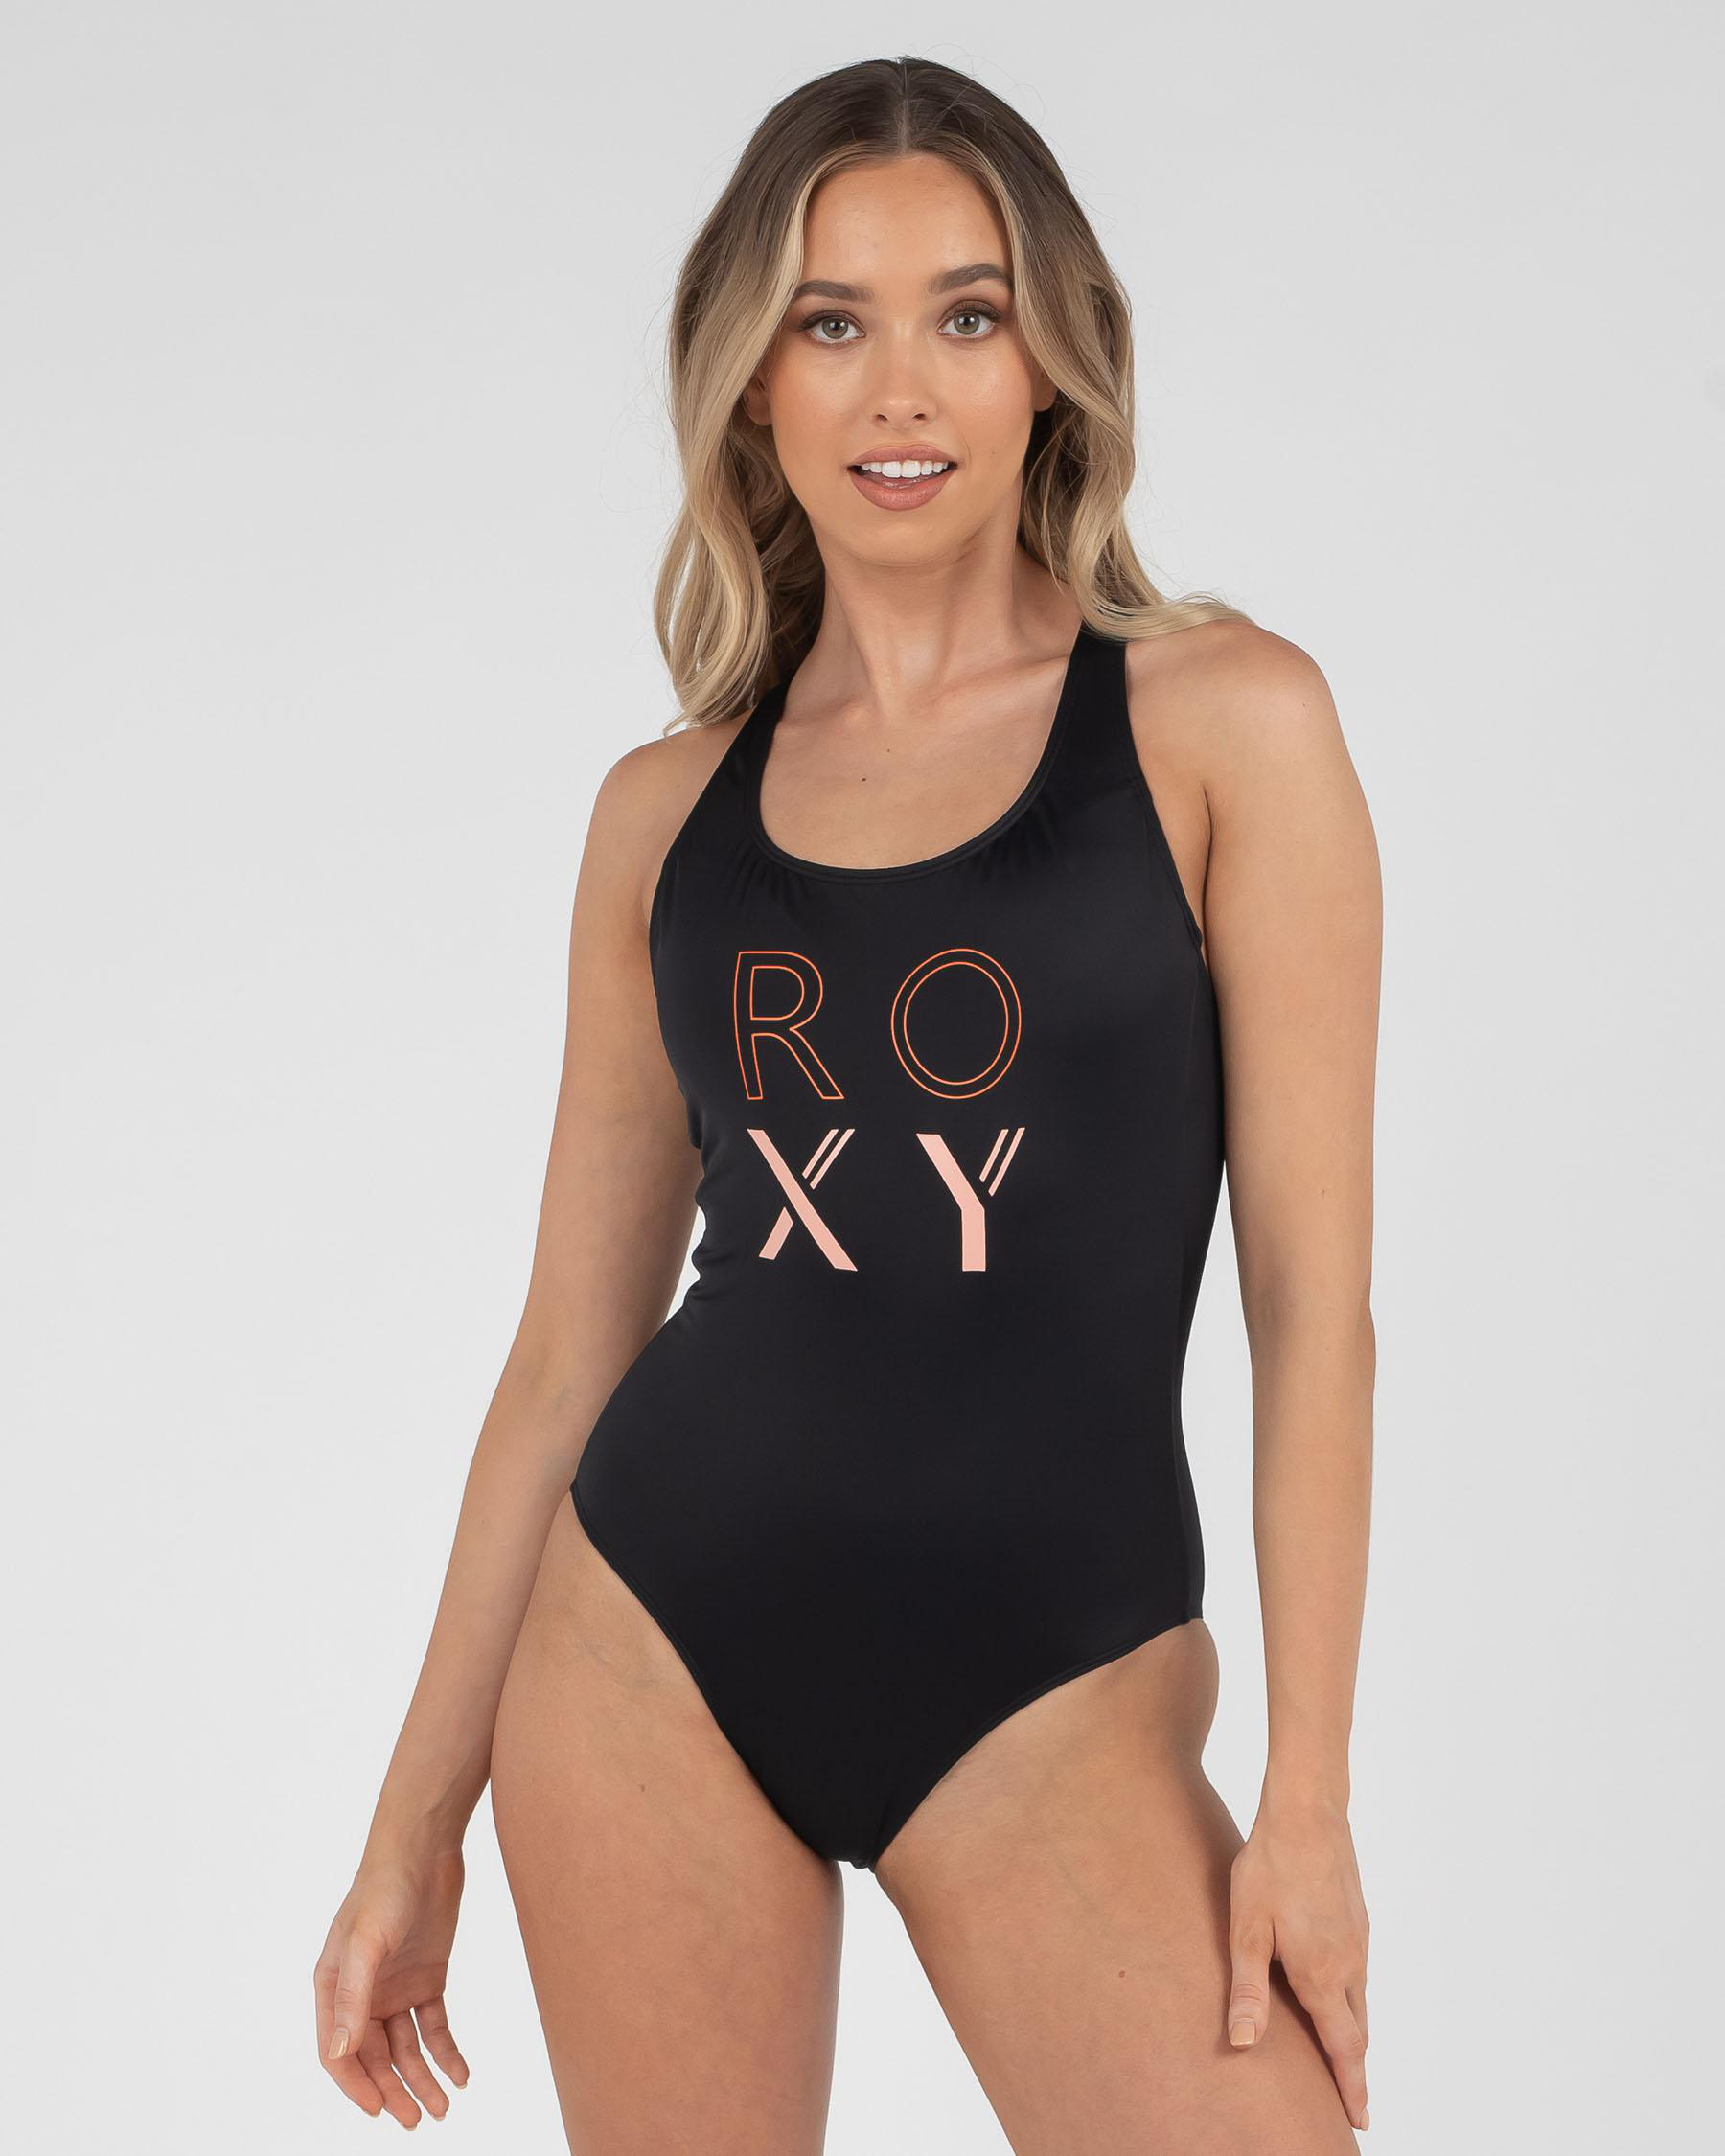 Womens Womens Roxy Fitness One Piece Swimsuit by ROXY